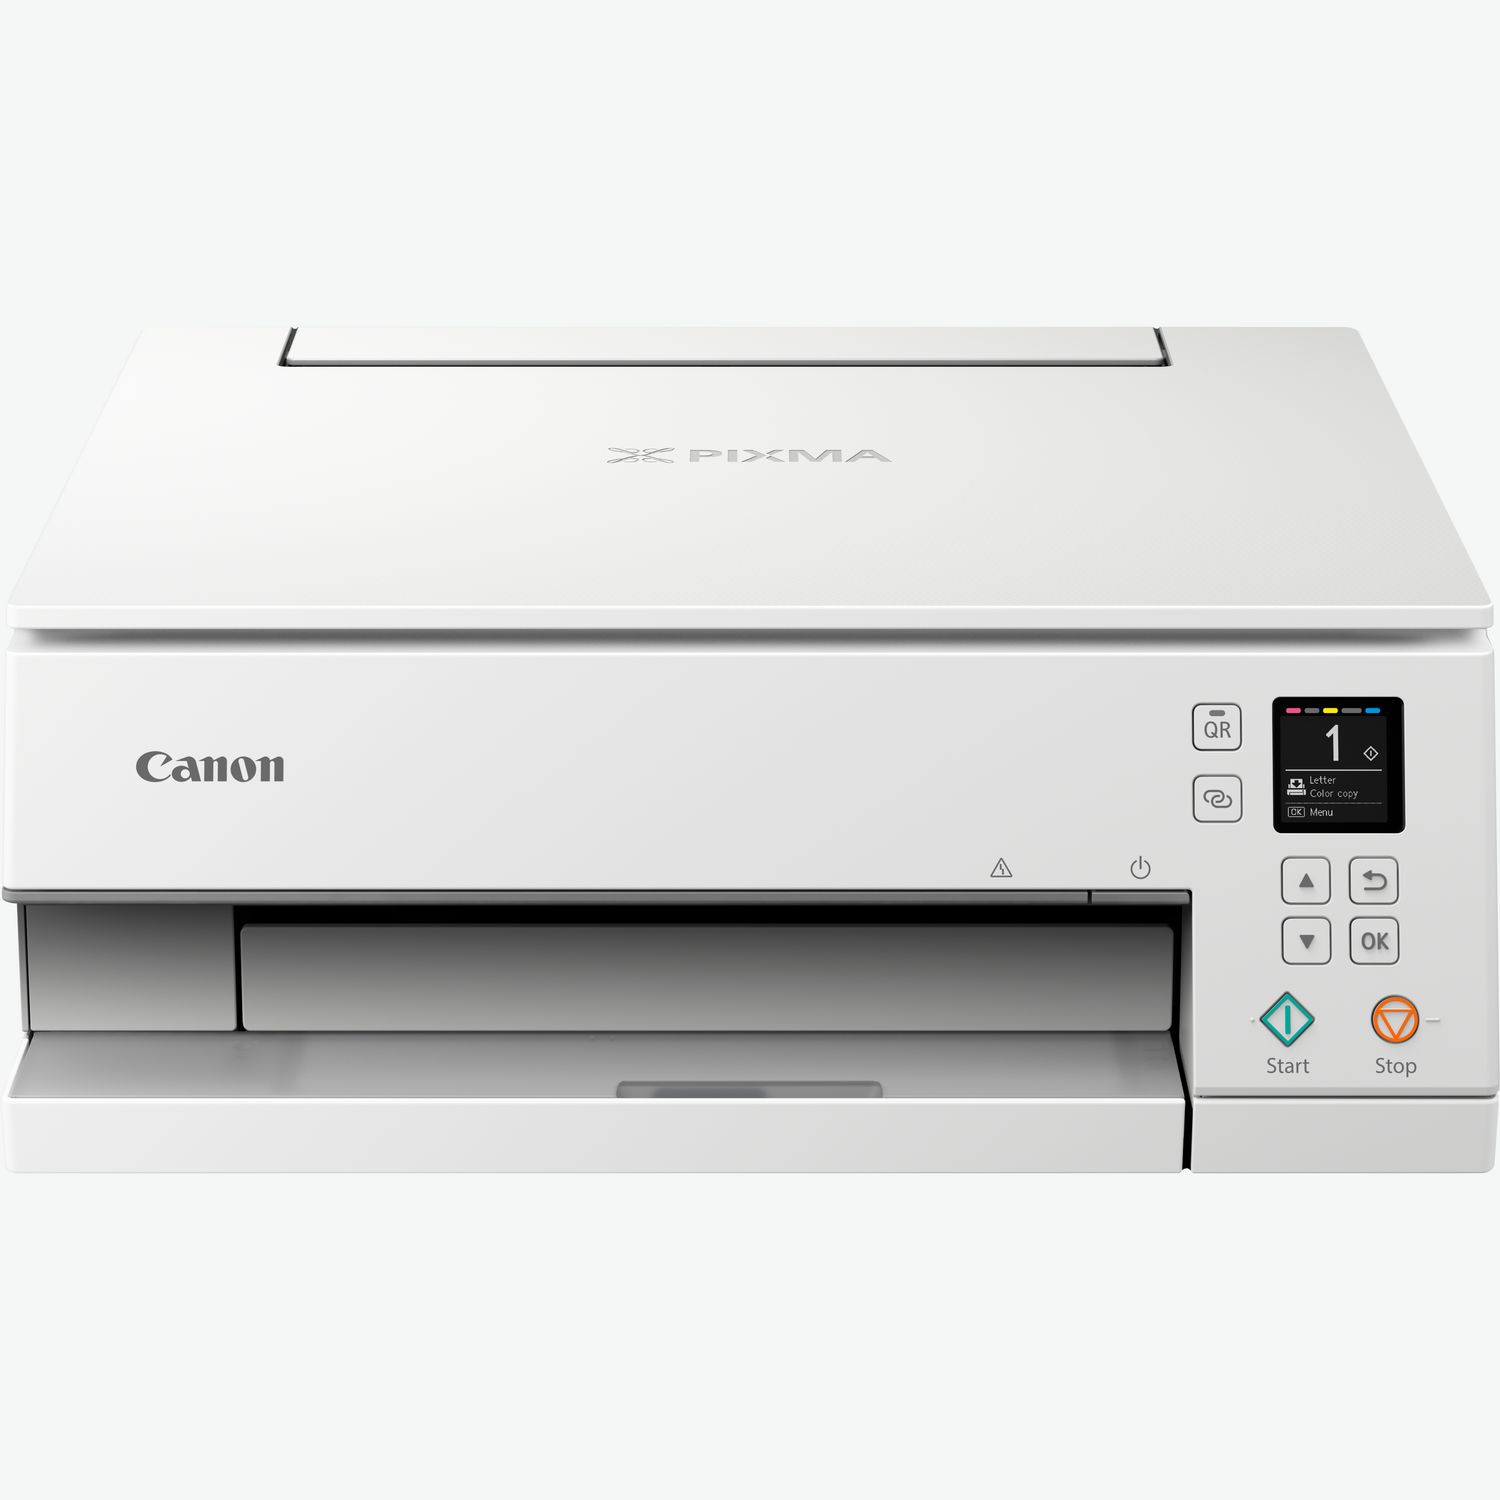 Canon IMP Encre PIXMA TS705 : : Informatique